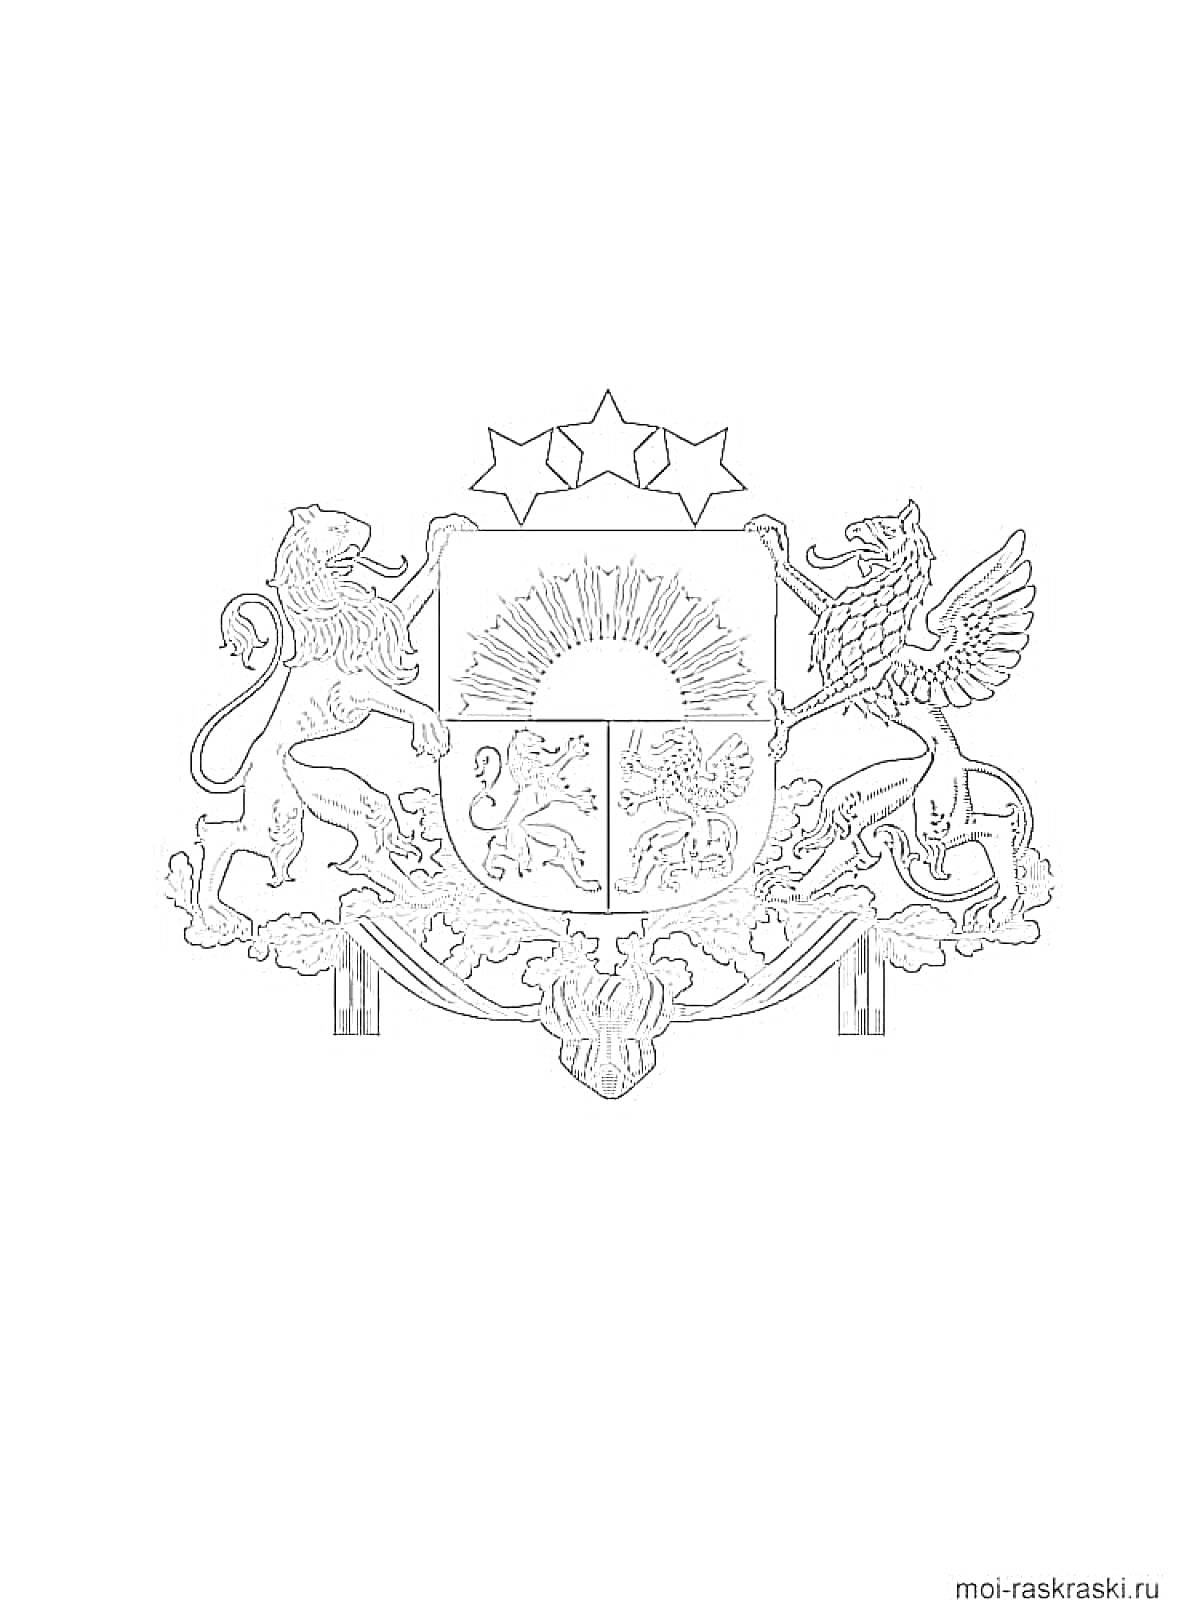 Герб с солнцем, львом, грифоном, тремя звездами и щитом с изображением оленя, льва и рыбы